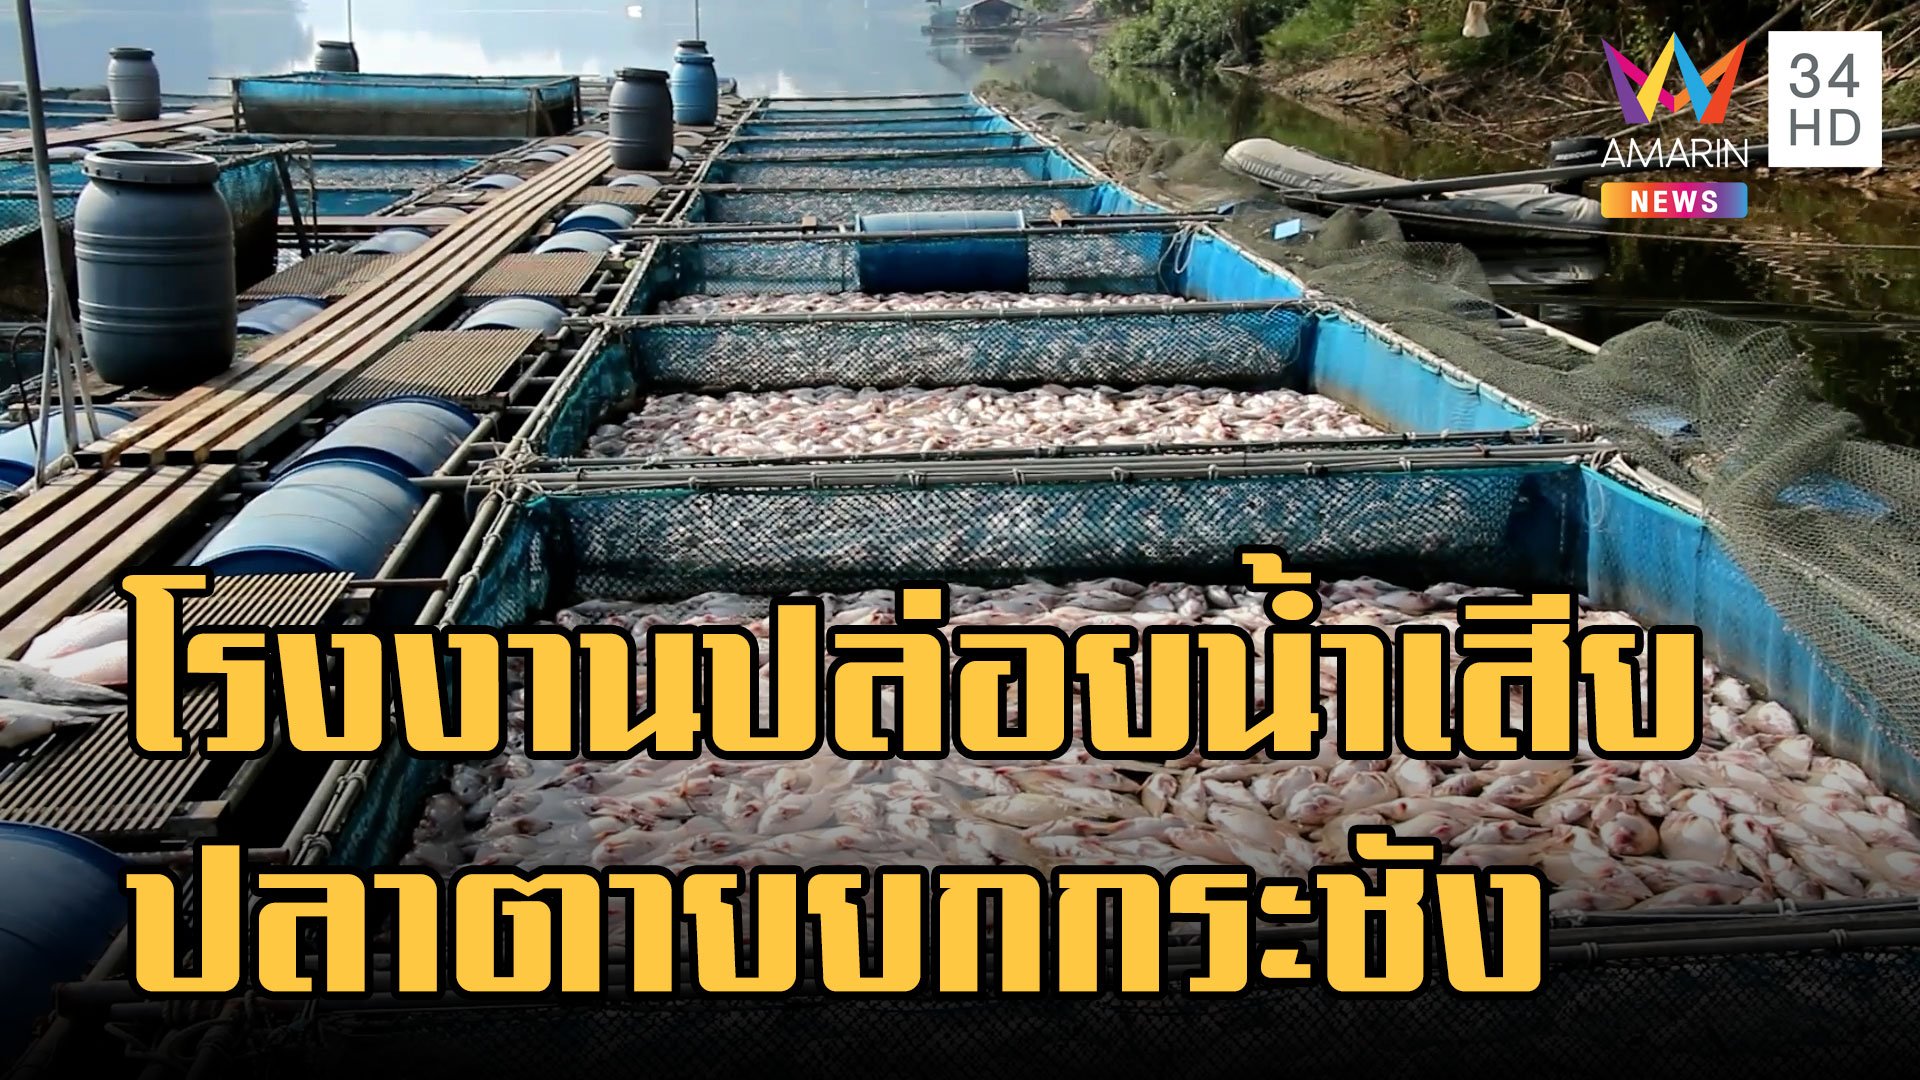 โรงงานปล่อยน้ำเสีย ปลาทับทิมตายยกกระชังครึ่งแสน | ข่าวอรุณอมรินทร์ | 24 ม.ค. 66 | AMARIN TVHD34